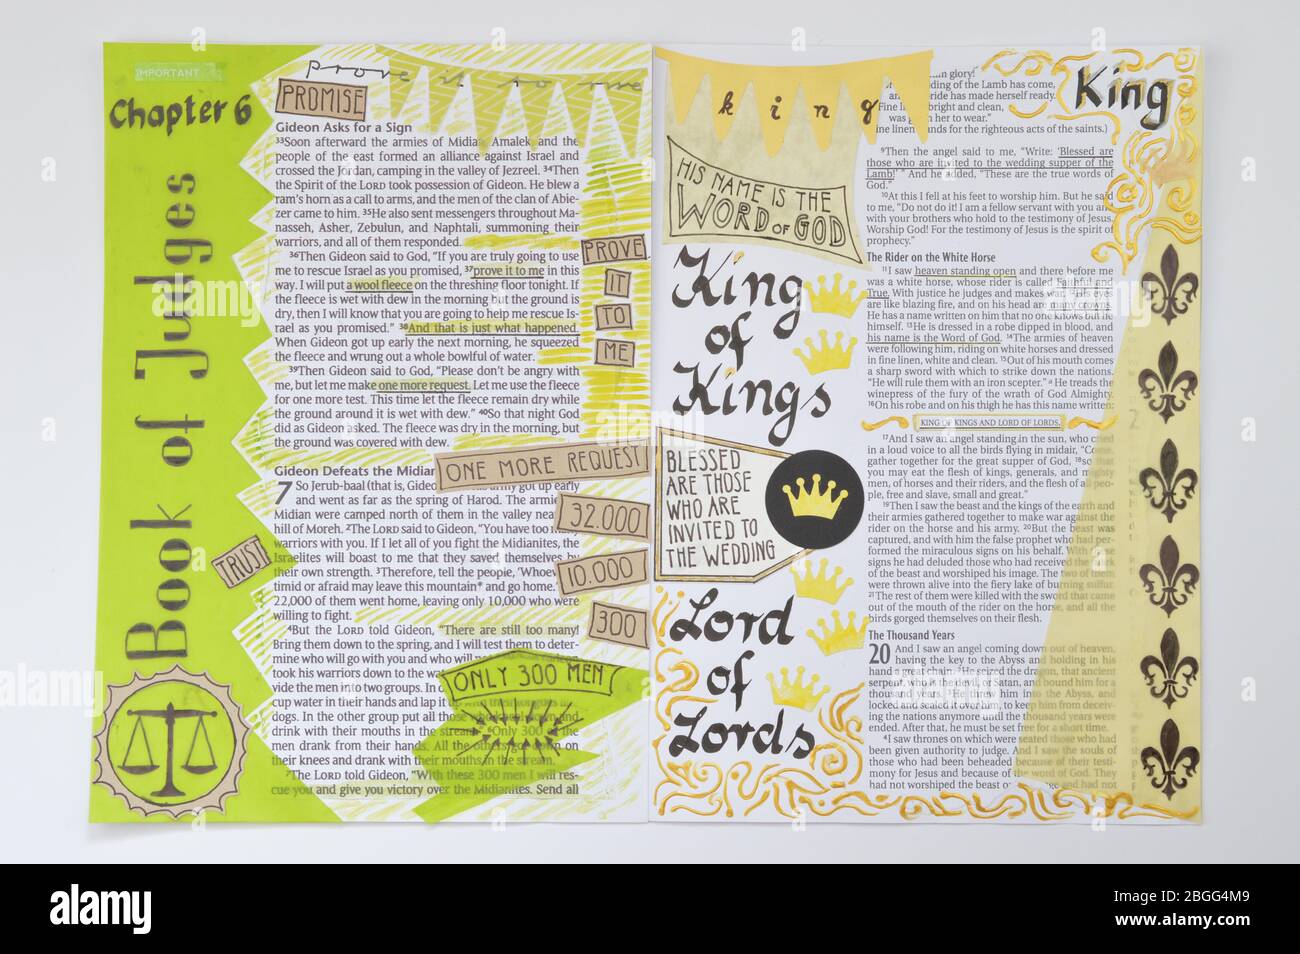 bible Art Journaling - kreativ bunt selbstgemacht illustrative Kennzeichnung Gestaltung Von bibelstellen bewusst zu werden und im Auge zu behalten Von Gottes Wort Stockfoto